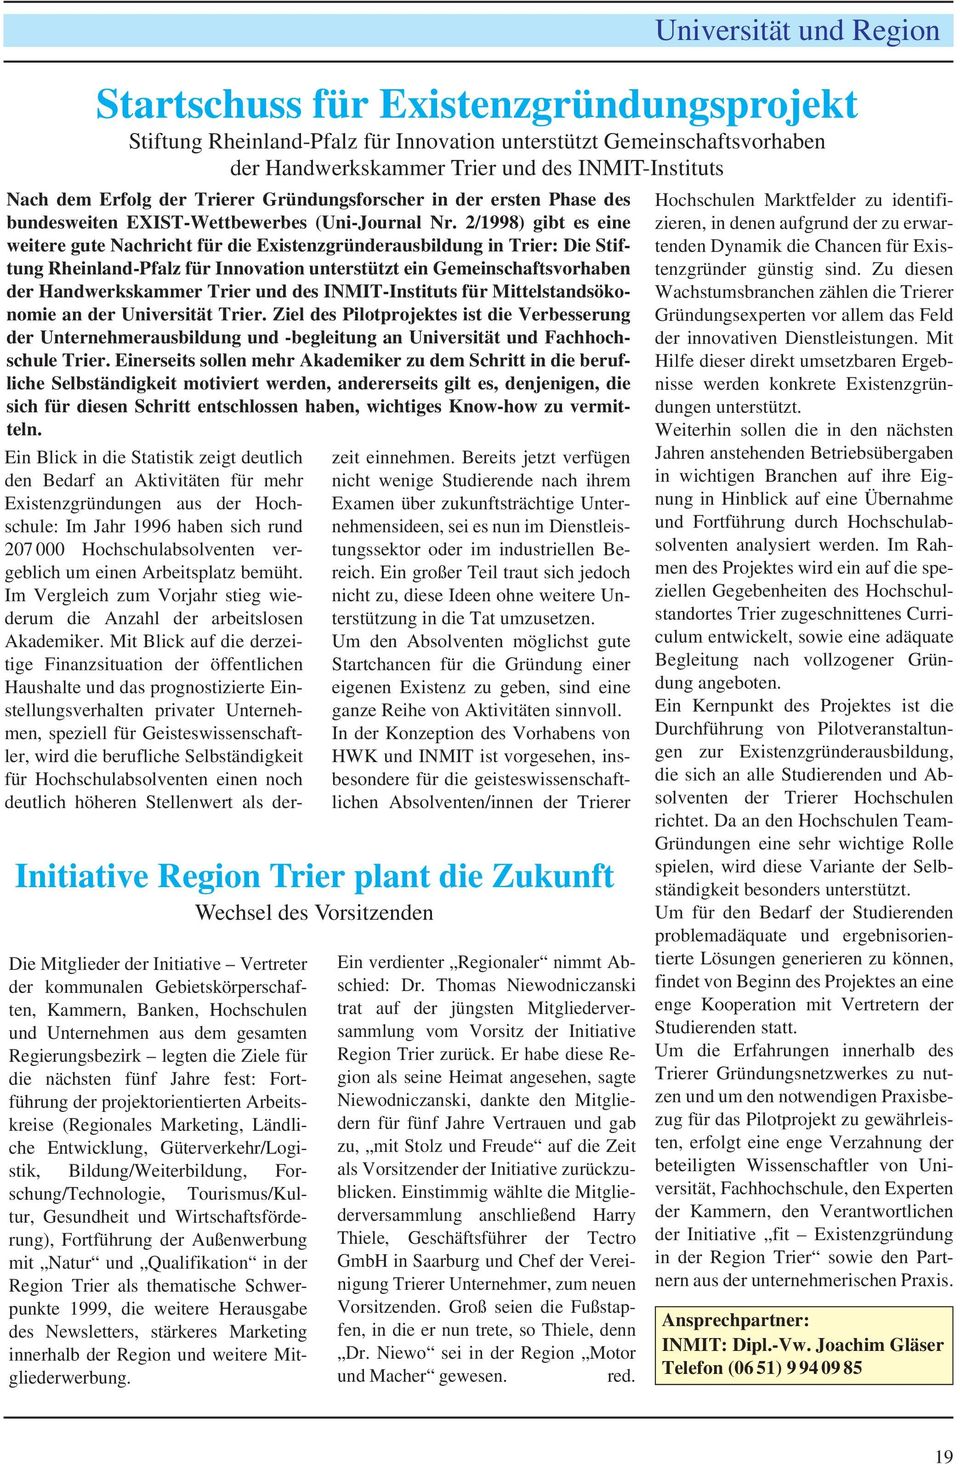 2/1998) gibt es eine weitere gute Nachricht für die Existenzgründerausbildung in Trier: Die Stiftung Rheinland-Pfalz für Innovation unterstützt ein Gemeinschaftsvorhaben der Handwerkskammer Trier und